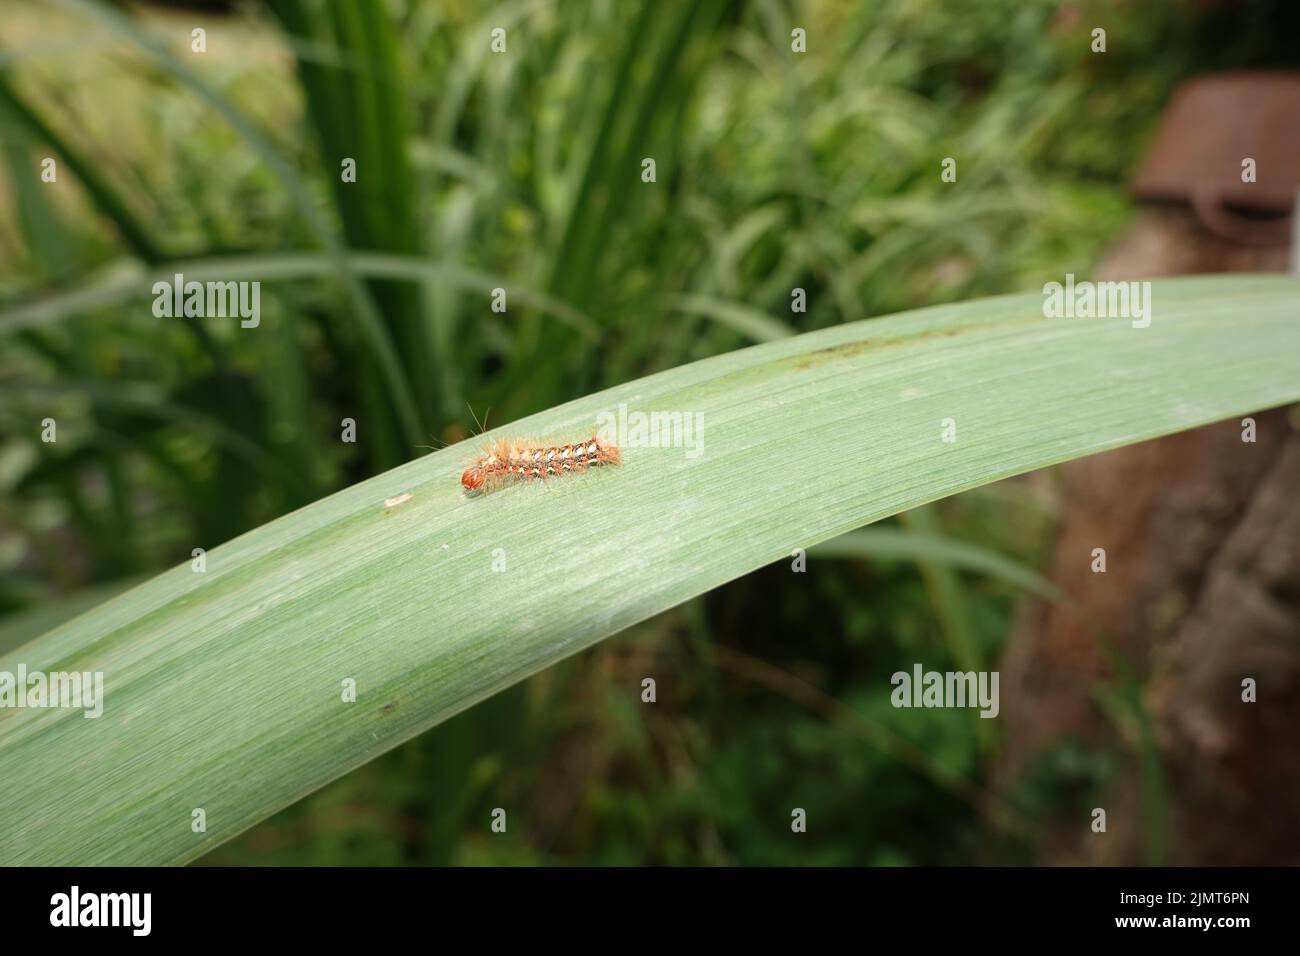 Raupe der Ampfer-Rindeneule (Acronicta rumicis), auch Ampfereule, auf dem Blatt einer Sumpf-Schwertlilie (Iris pseudacorus) Stock Photo